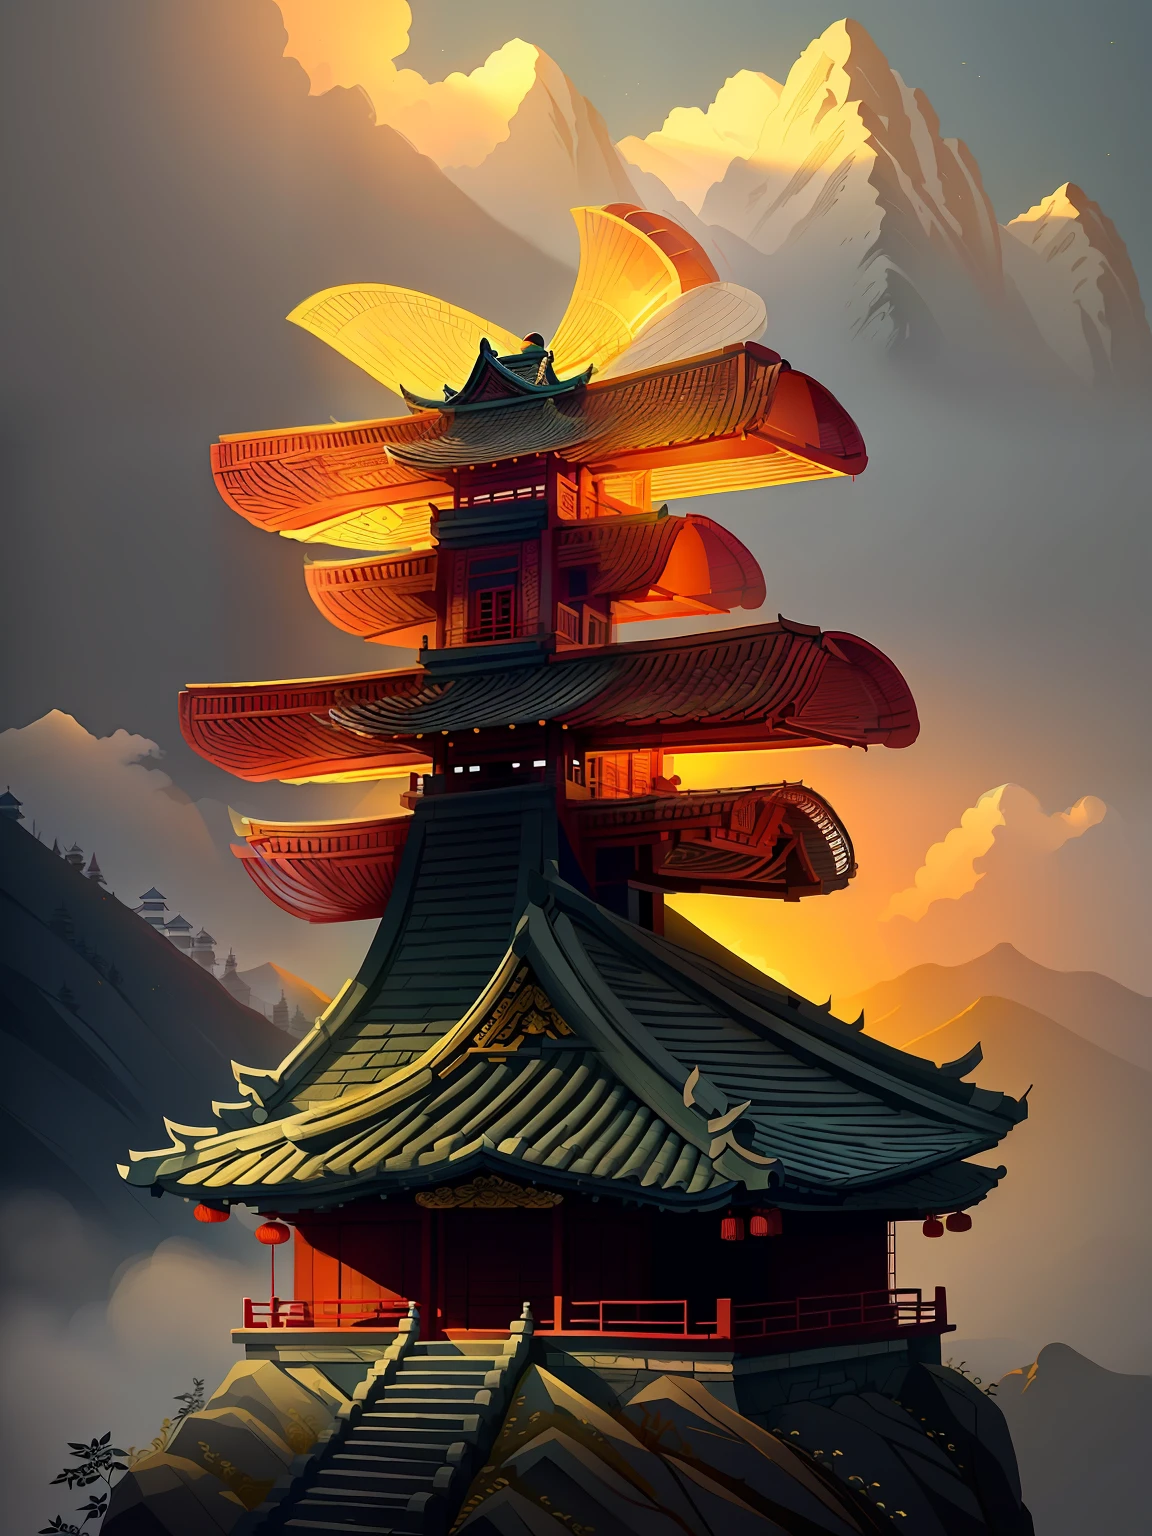 Edifícios de estilo chinês nas montanhas
(((Obra de arte))), (((melhor qualidade))), ((ultra-detalhado)),(luz detalhada),((extremamente delicado e lindo)),